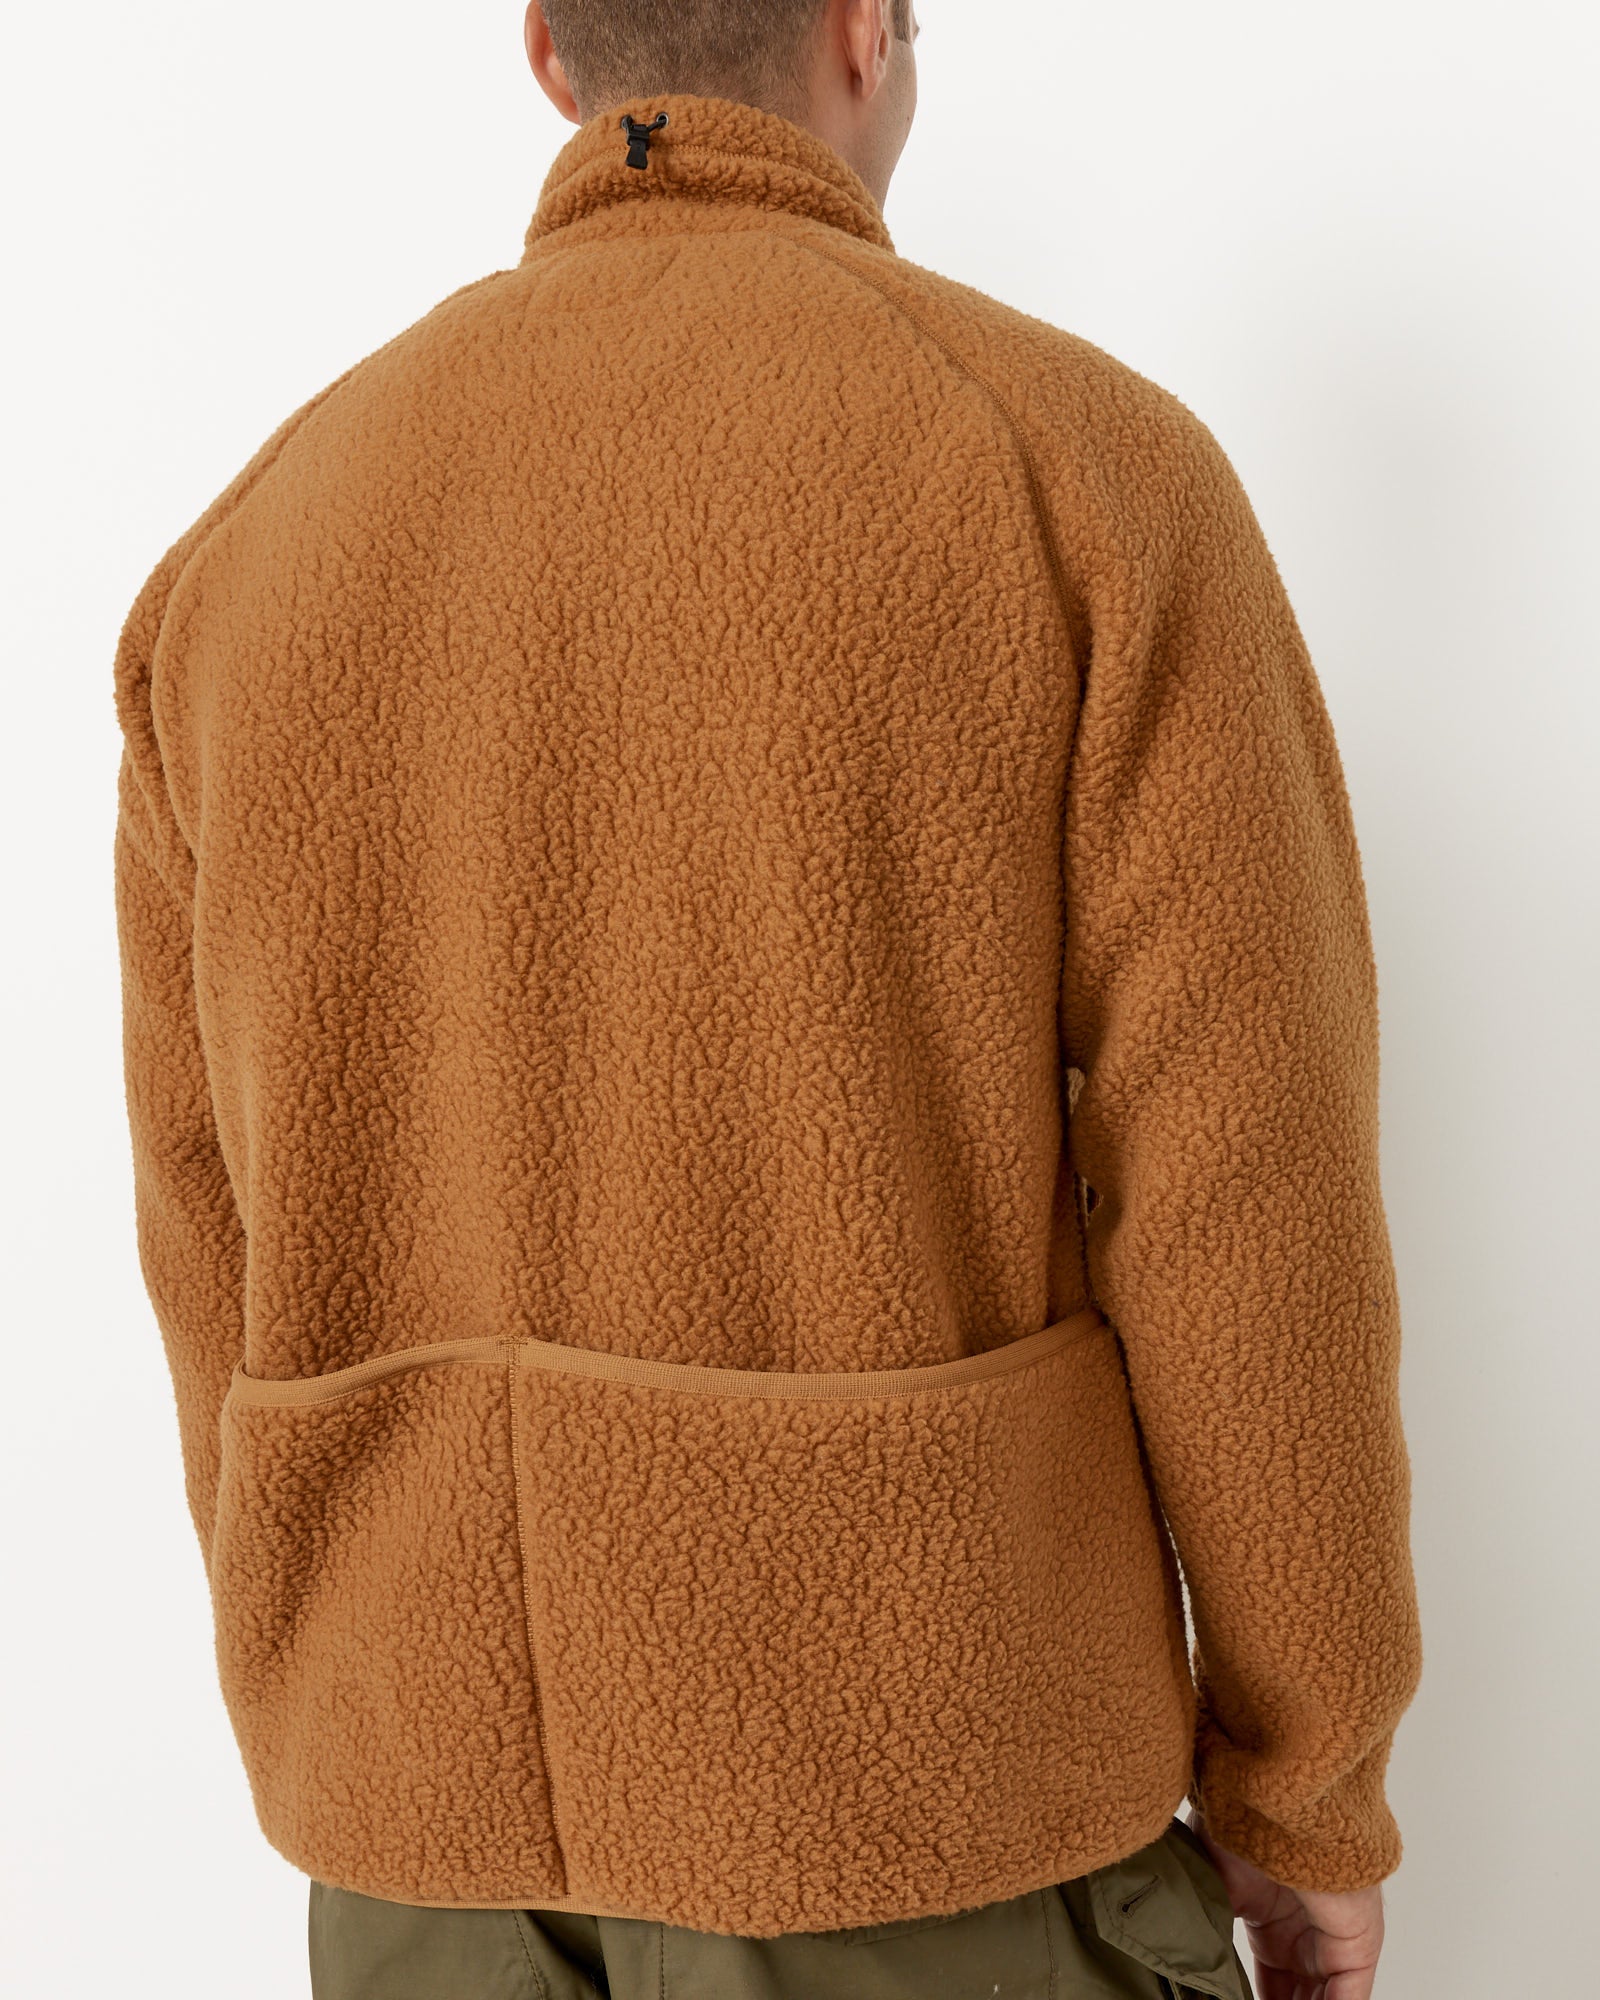 Thermal Boa Fleece Jacket